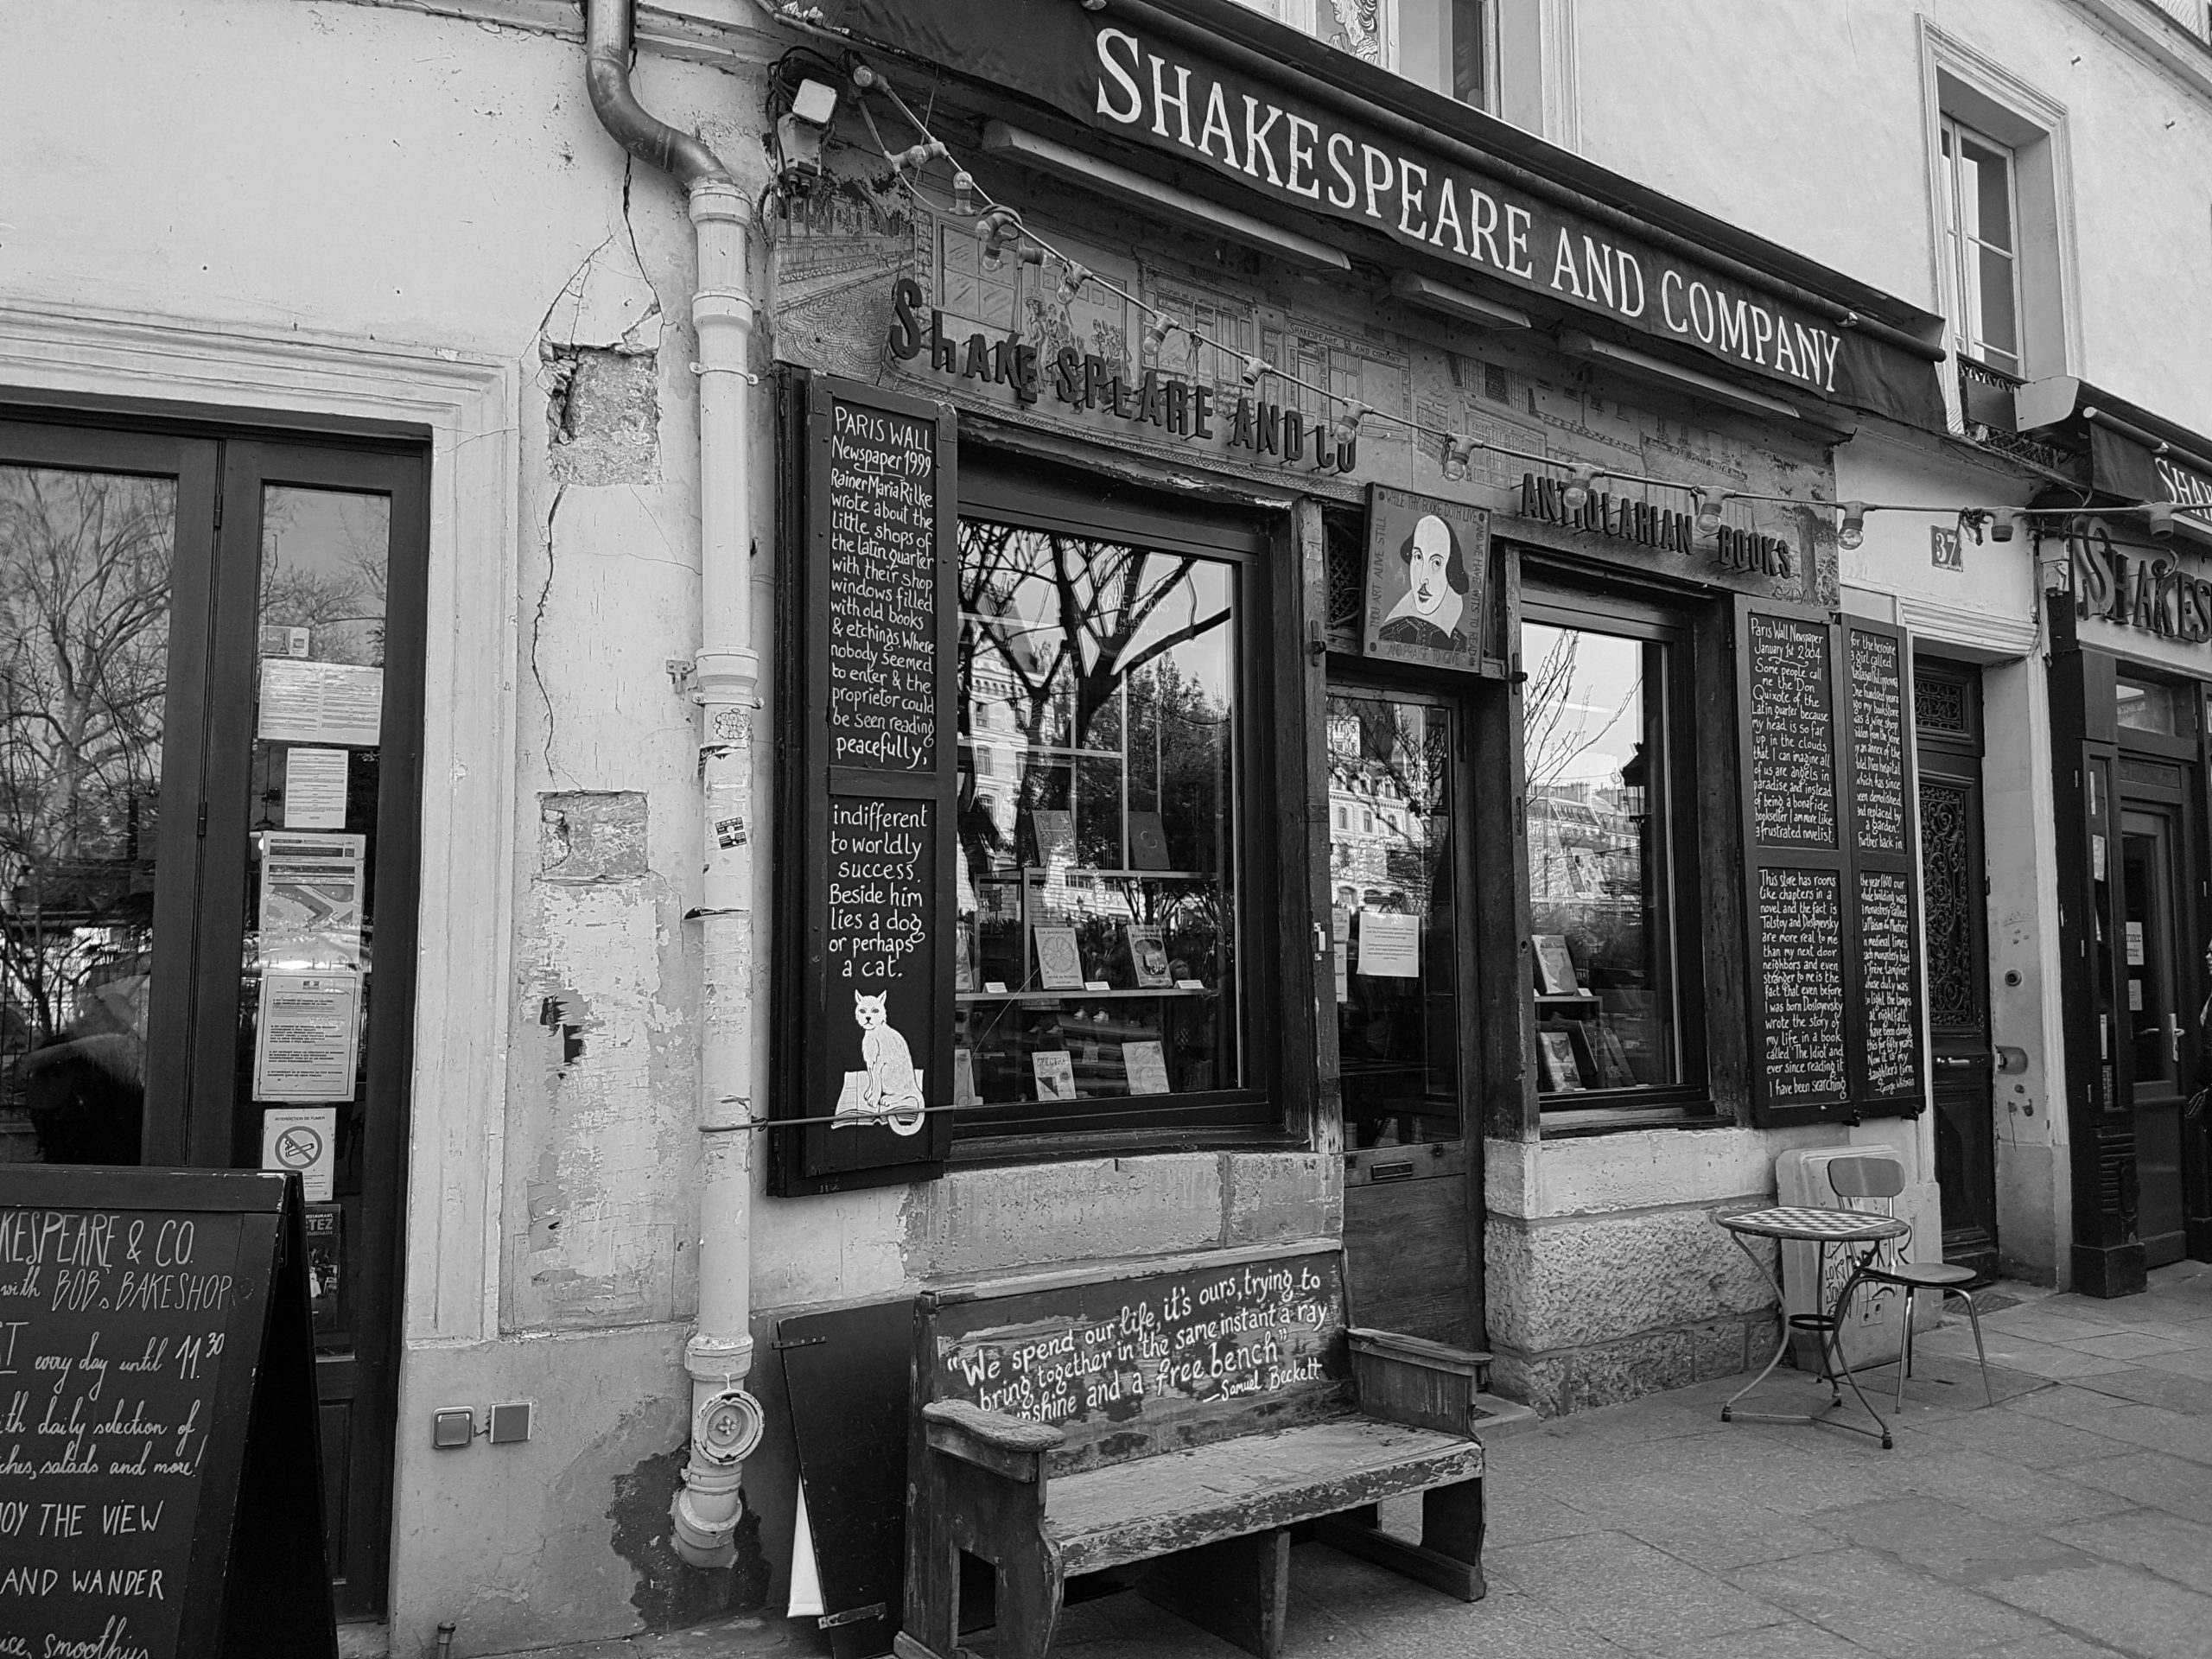 A shop regarding Shakespeare